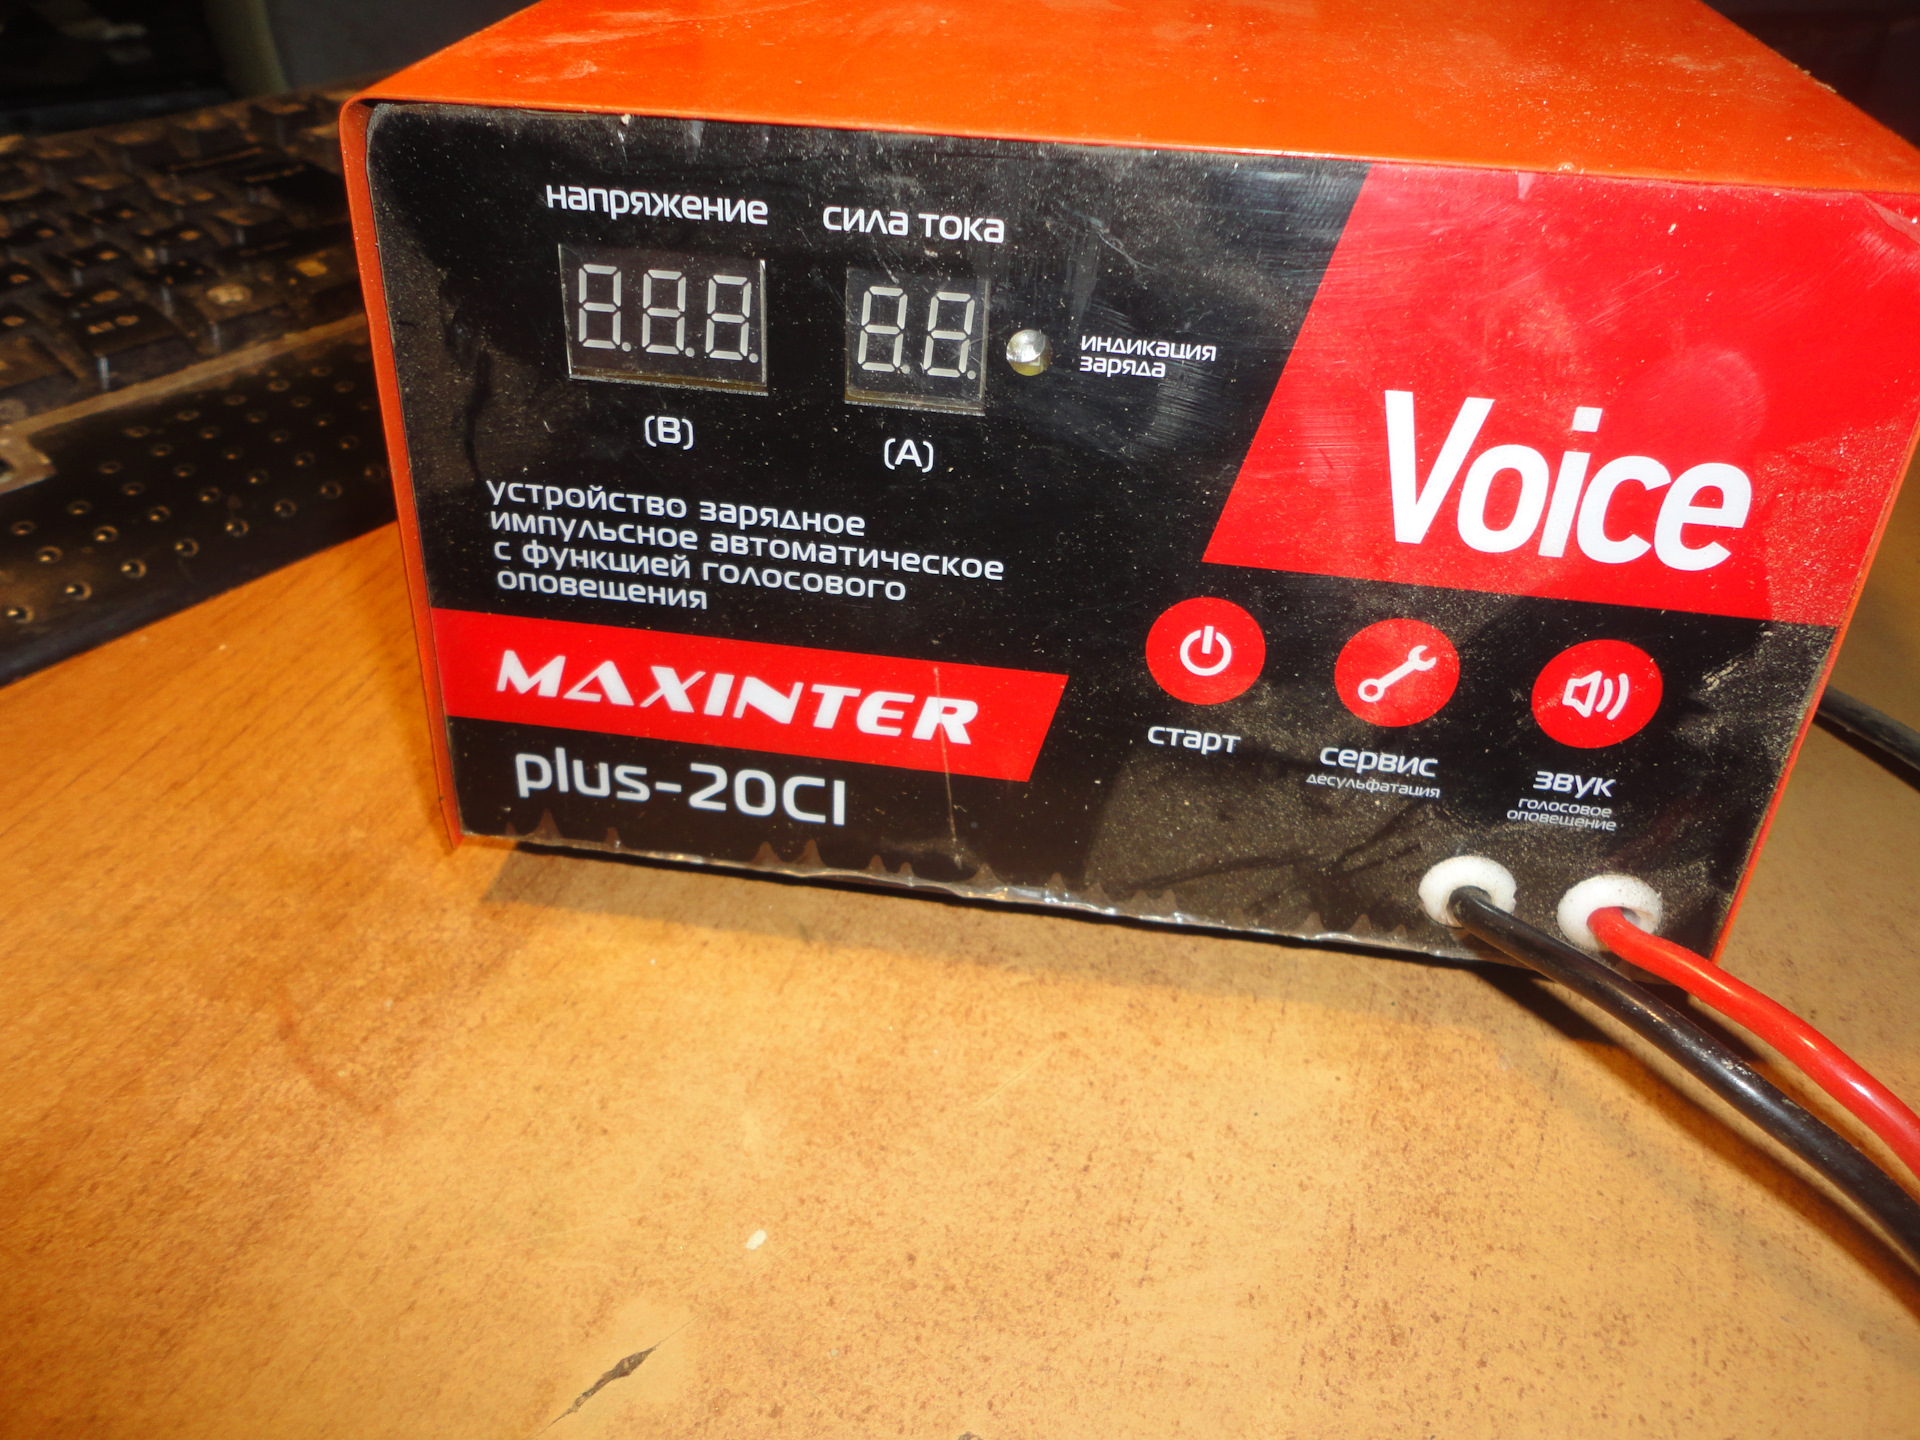 Максинтер зарядное. Зарядное устройство Maxinter Plus-20 ci. Зарядное устройство Maxinter "Plus-20 ci" (6v, 12v, 24v). Зарядное устройство Plus-21 bi Maxinter. Зарядное устройство 24в 120 Ач 150 Maxinter.